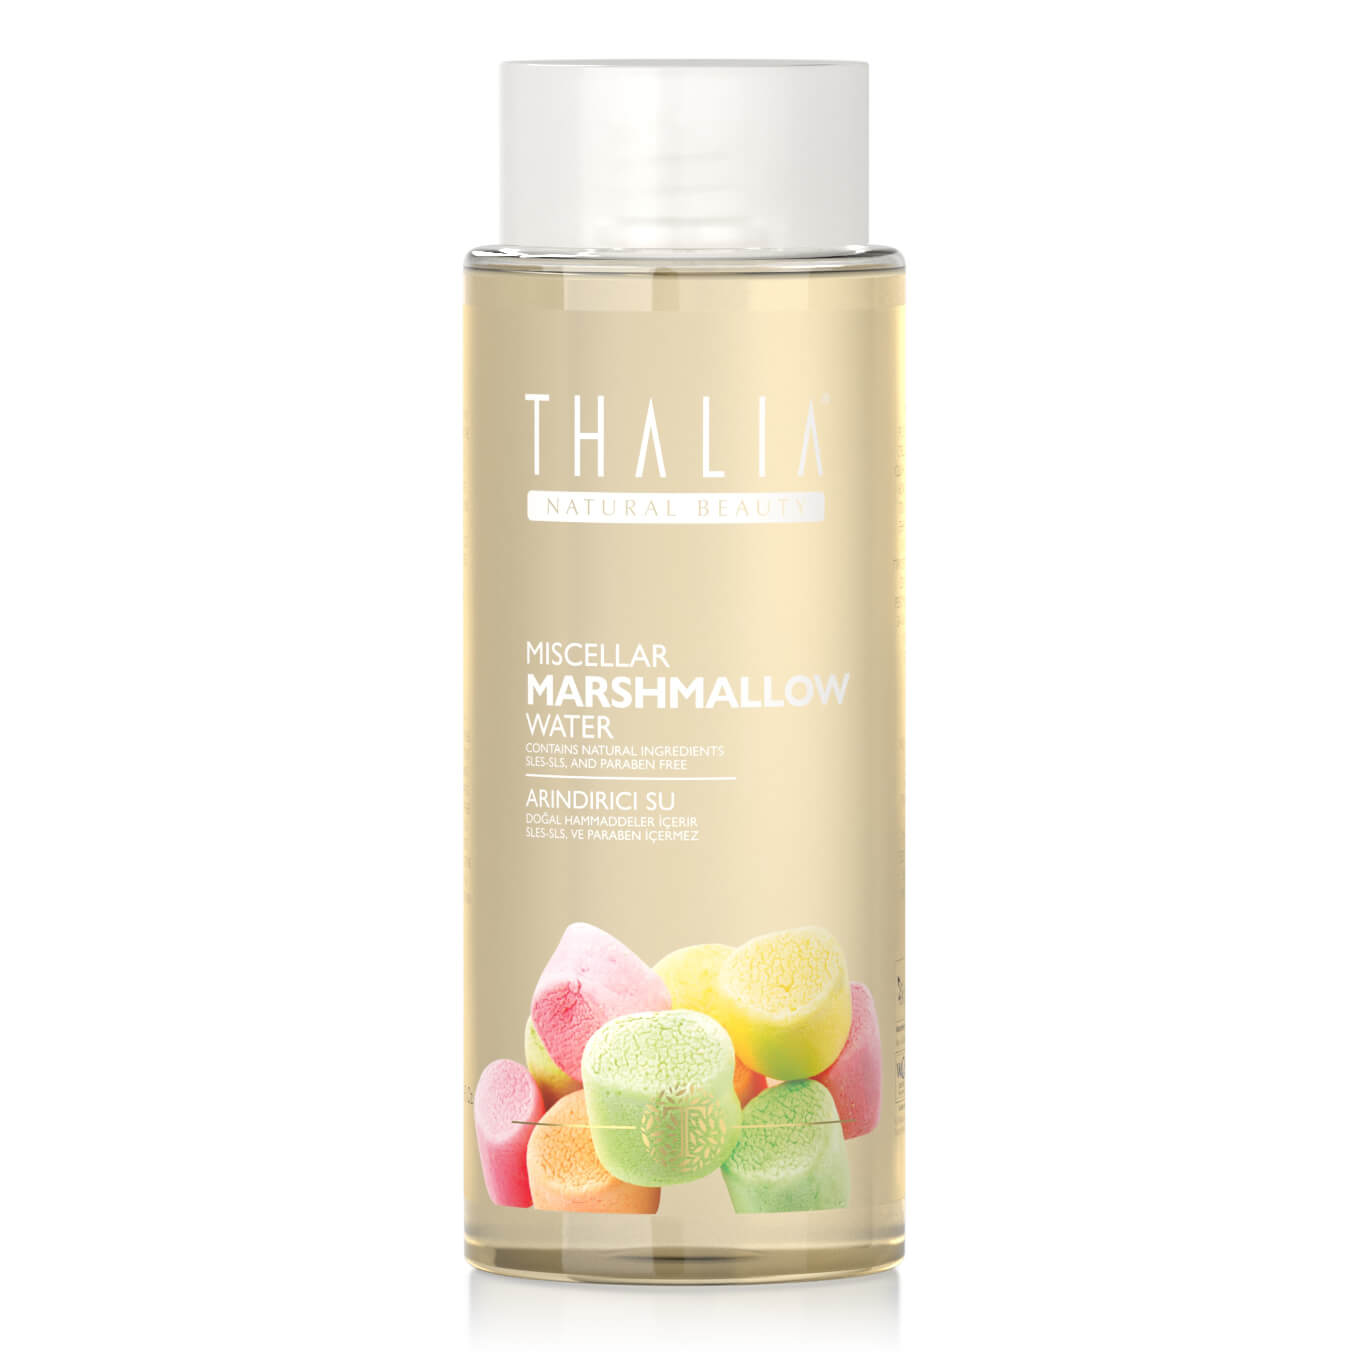 Thalia Akne& Sivilce Karşıtı Miselar Marshmallow Yüz Temizleme Suyu - 300 ml